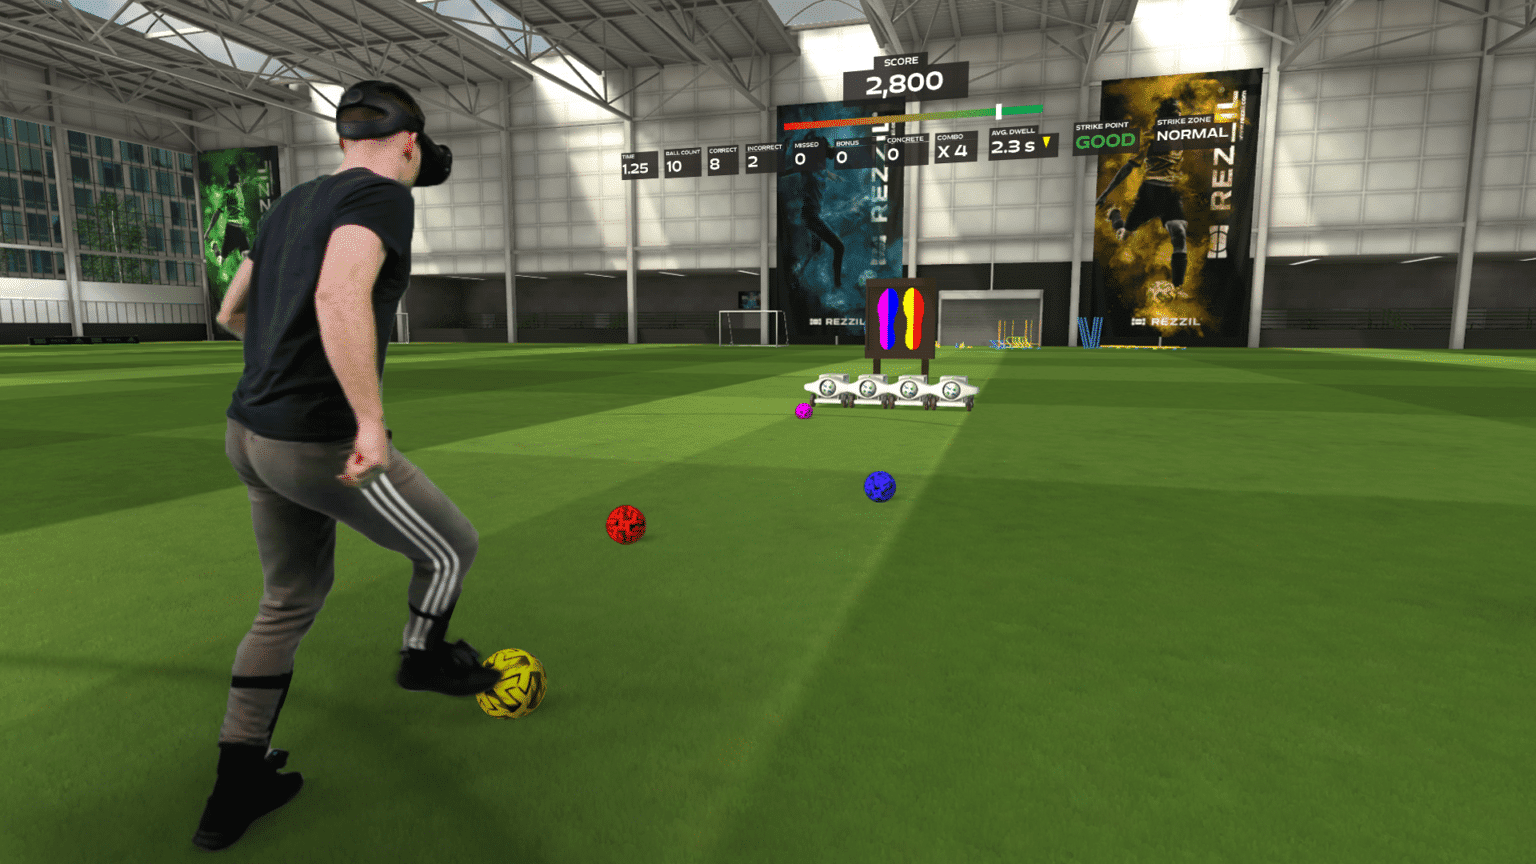 Rezzil : Les joueurs de foot peuvent désormais s'entraîner en conditions réelles grâce à la VR